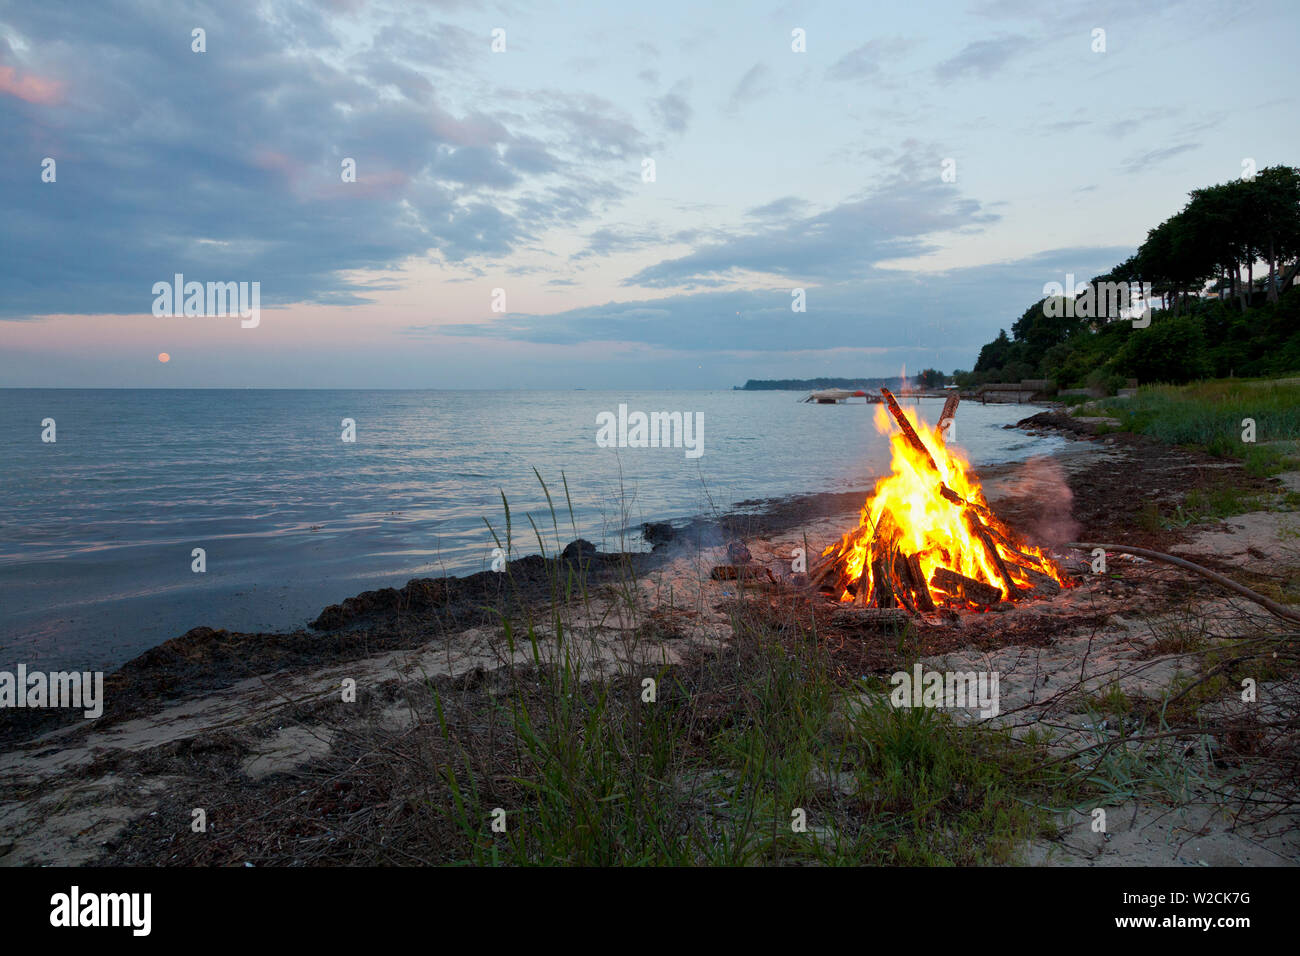 Hoguera en la luz del norte de noche de verano en la playa en Skodsborg, Sealand, Dinamarca en celebración del solsticio de verano y la víspera de San Juan, Sankthansaften Foto de stock